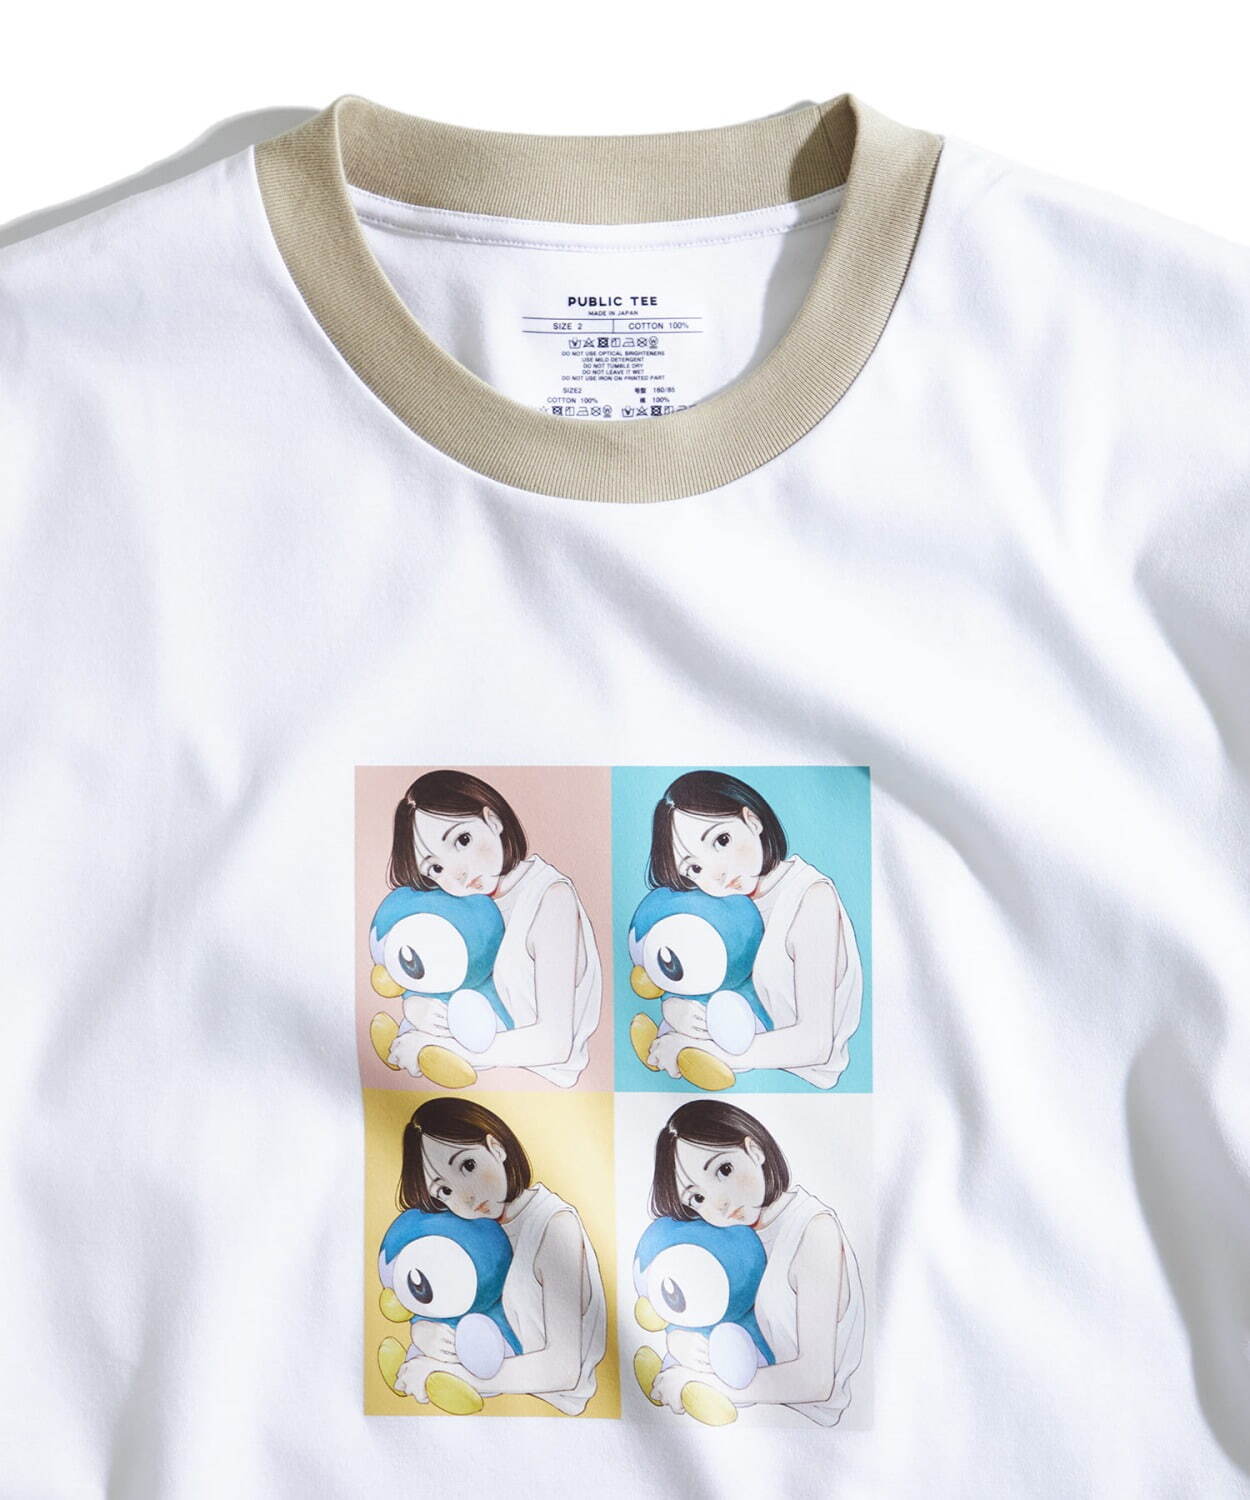 Tシャツ 6,930円(古塔つみのイラスト)